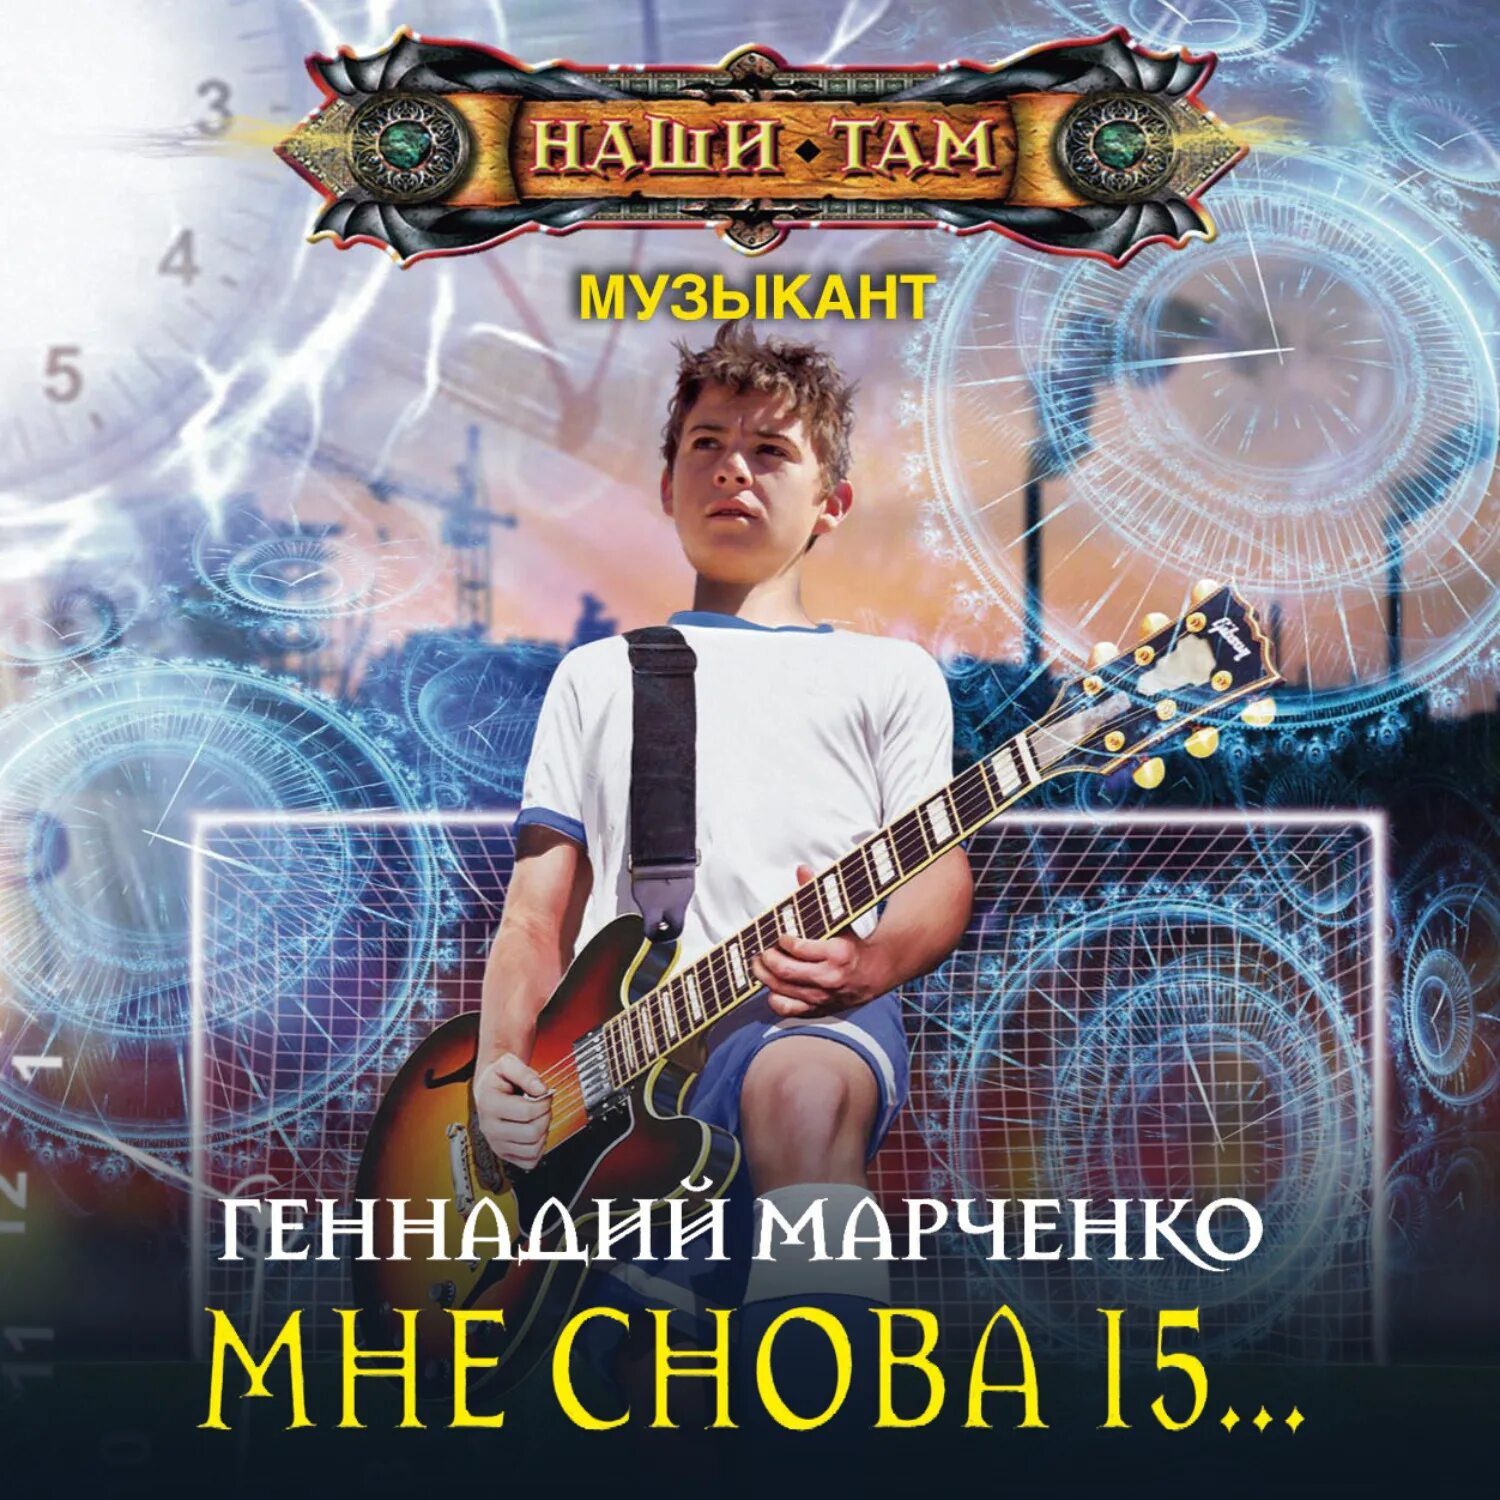 Снова пятнадцать. Марченко музыкант 1 Троицкий 2019.